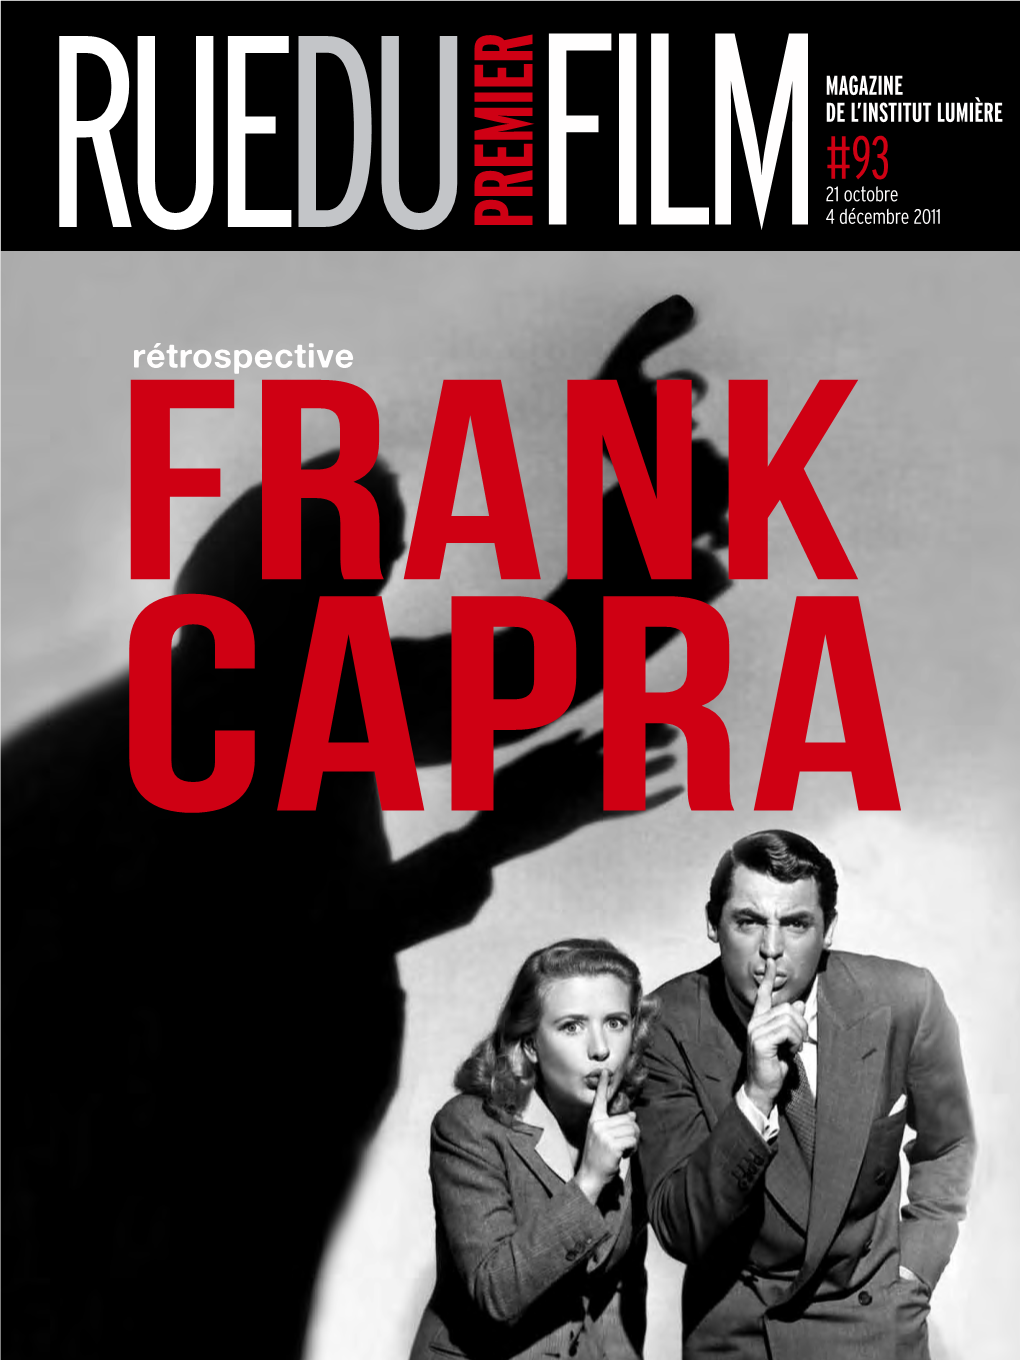 Frank Capra L'ennemi Public, William A